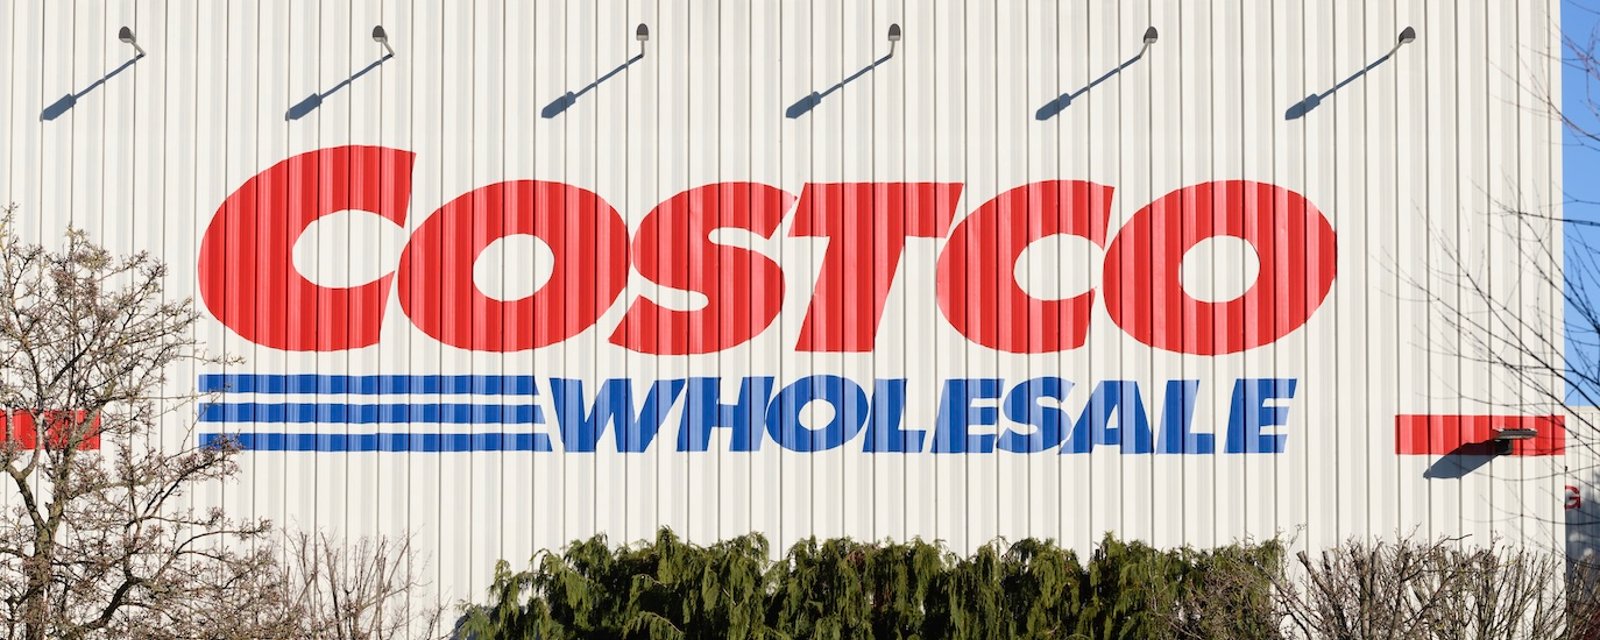 Costco est à la recherche d'employés et offre des salaires allant jusqu'à 70 000 $.